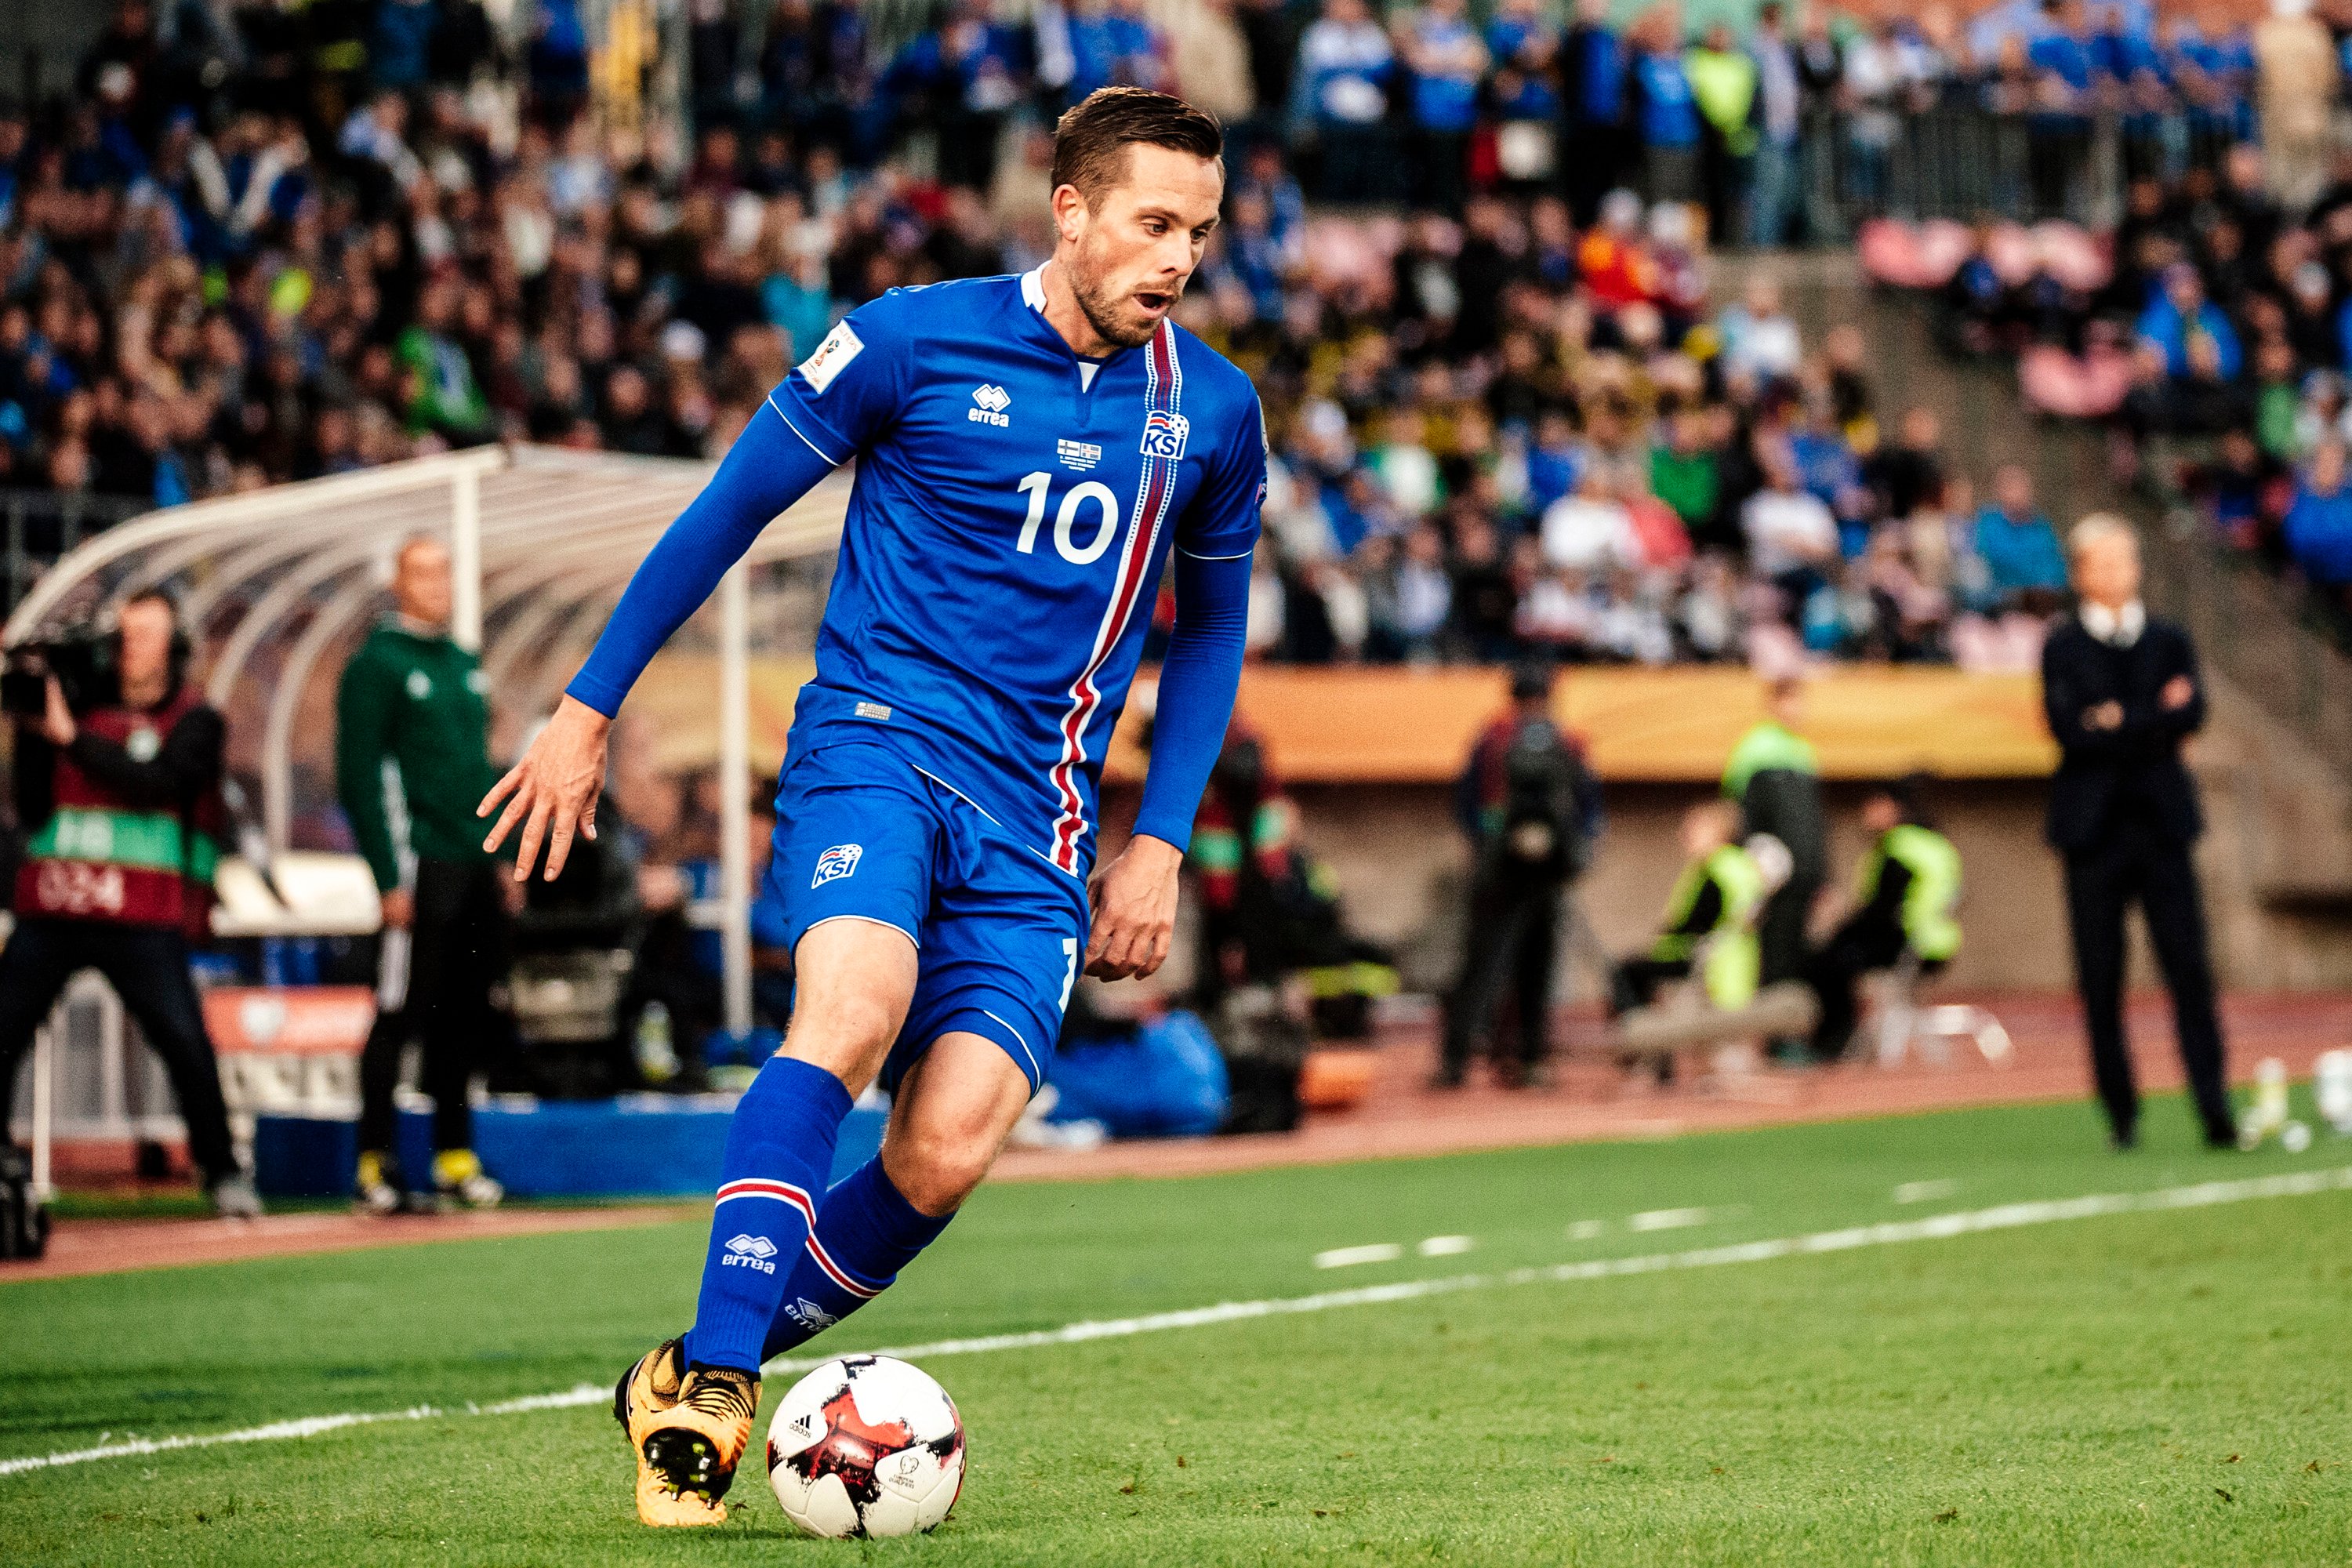 Saiba como assistir a Islândia x Croácia pela Copa do Mundo 2018